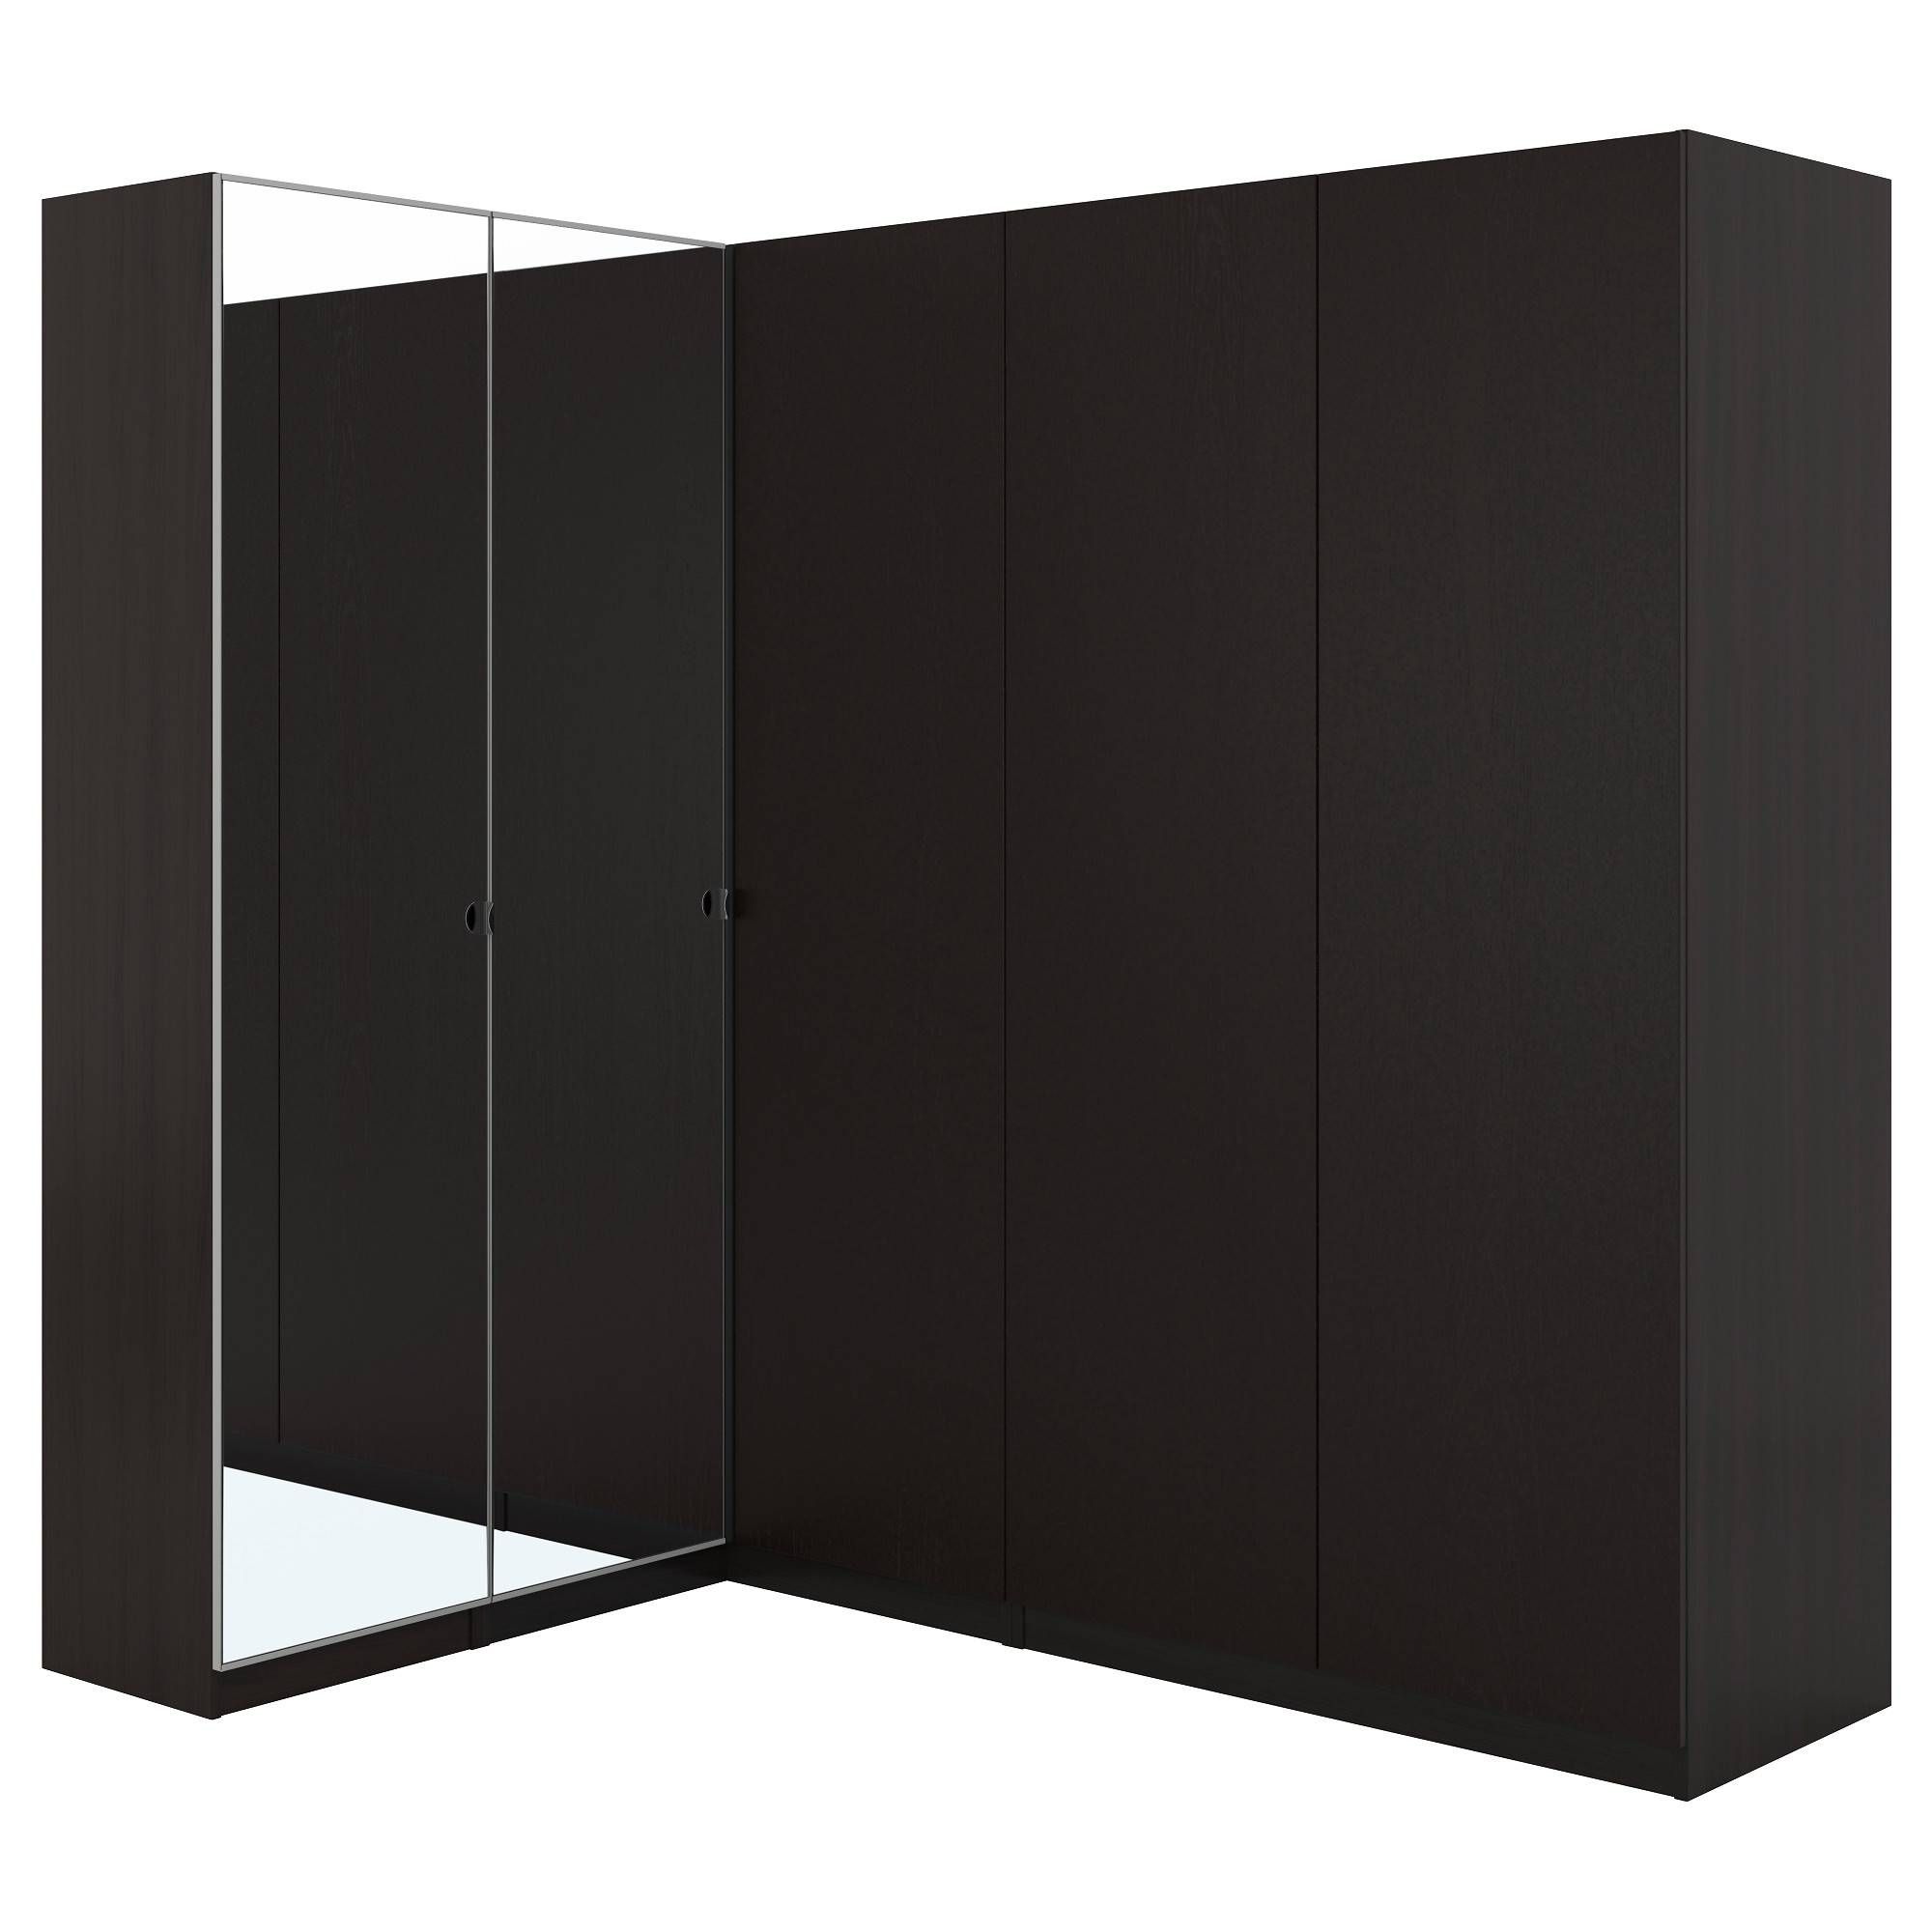 Pax Corner Wardrobe Black Brown/nexus Vikedal 160/188x201 Cm – Ikea Regarding Black Corner Wardrobes (View 9 of 15)